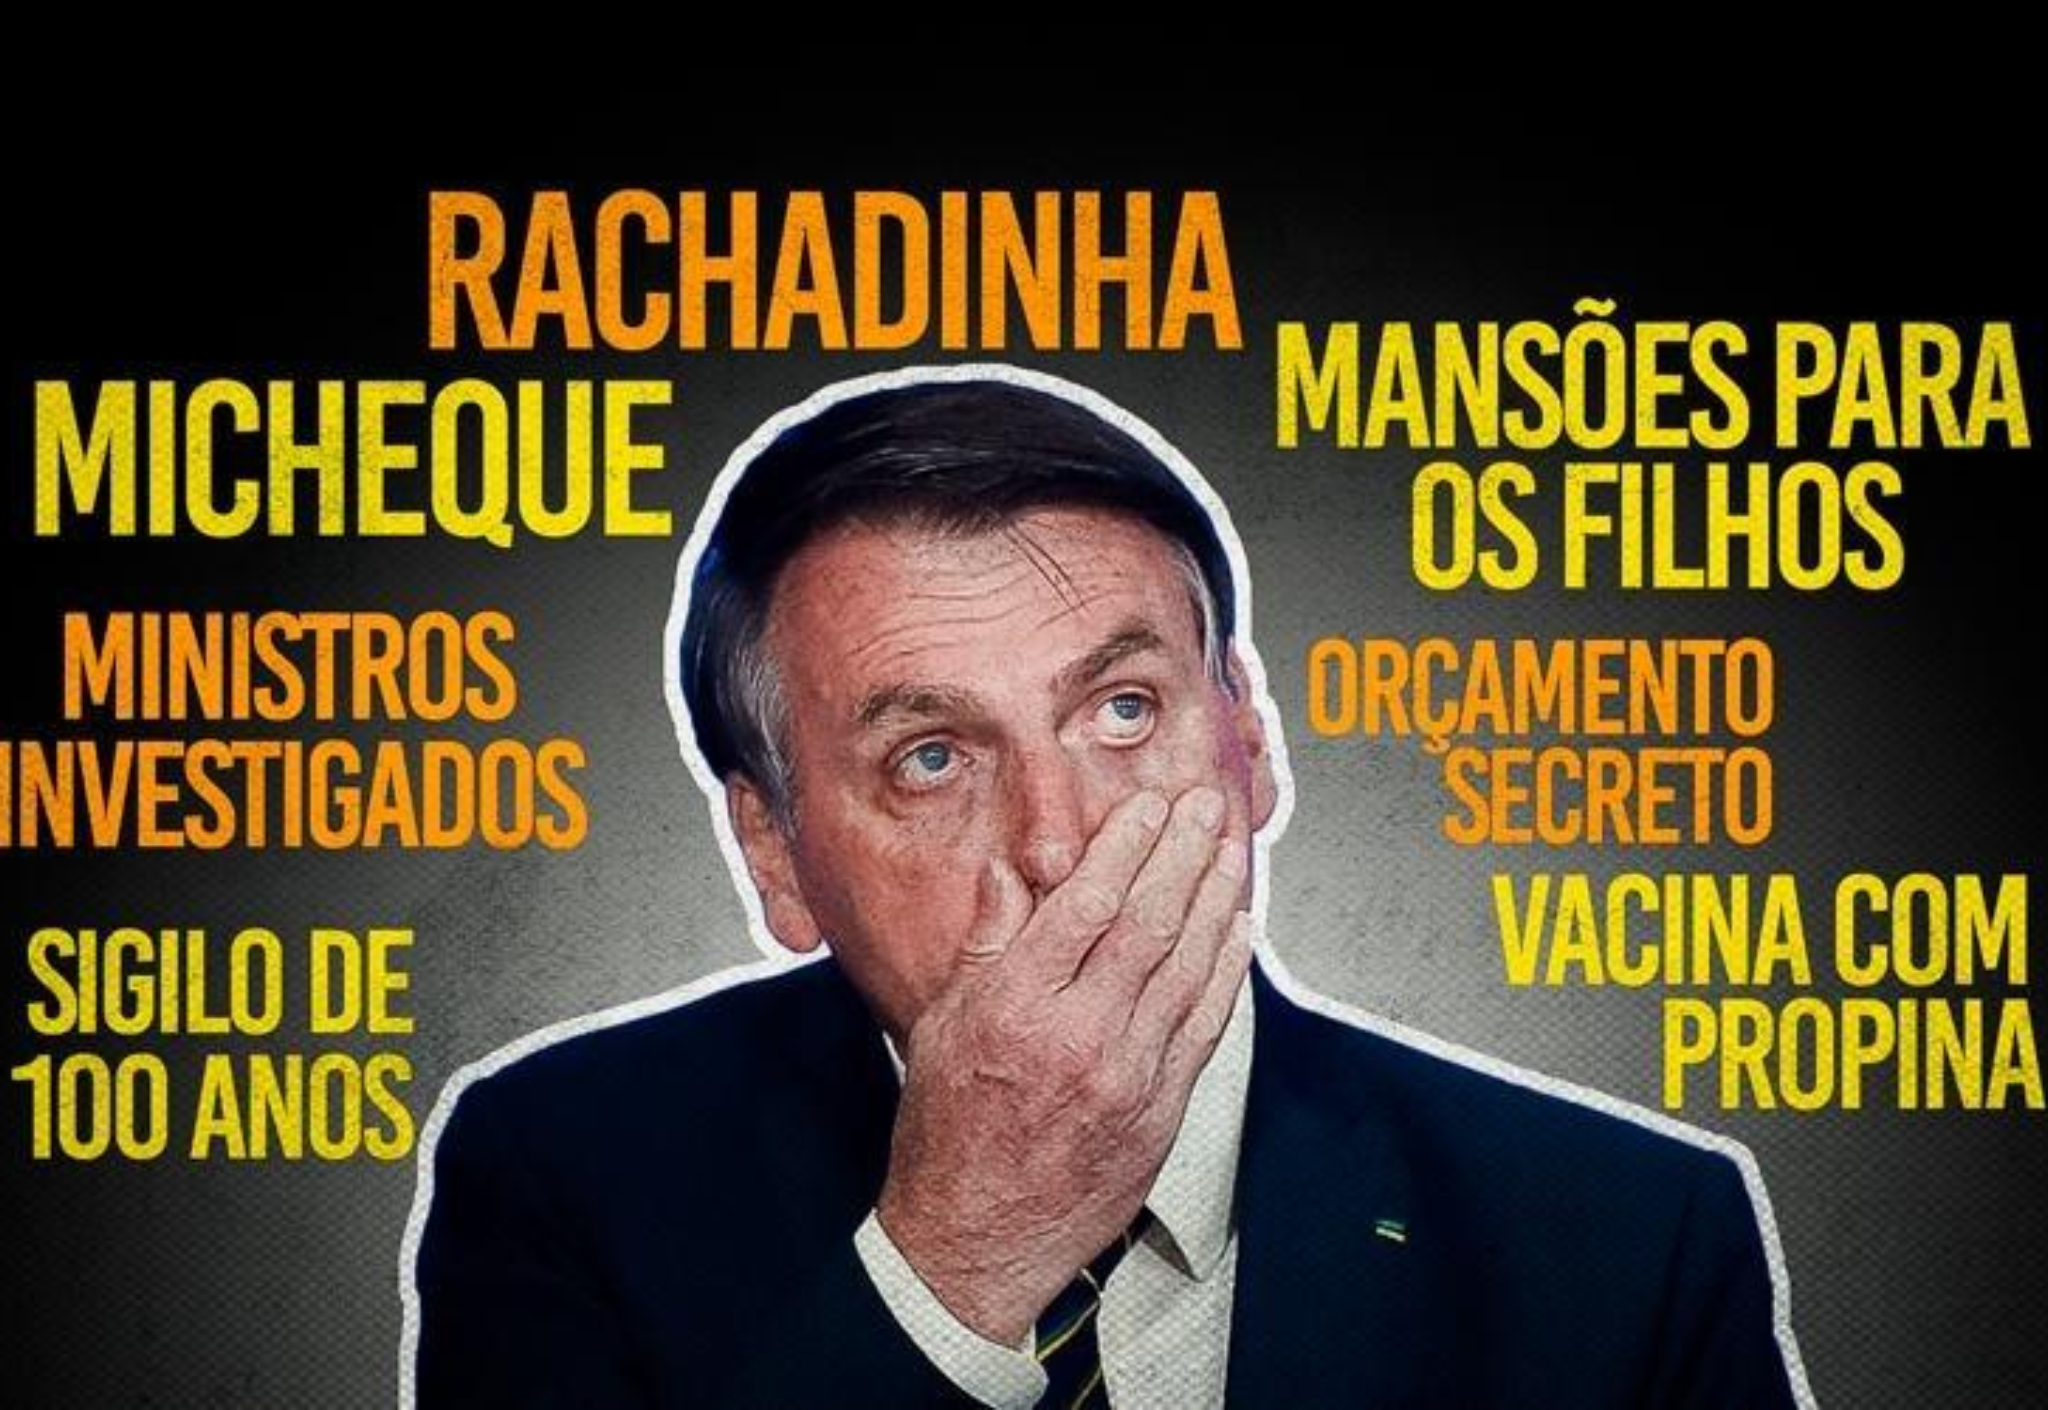 01, 02, 03, 04. Os quatro filhos de Bolsonaro sob investigação da polícia